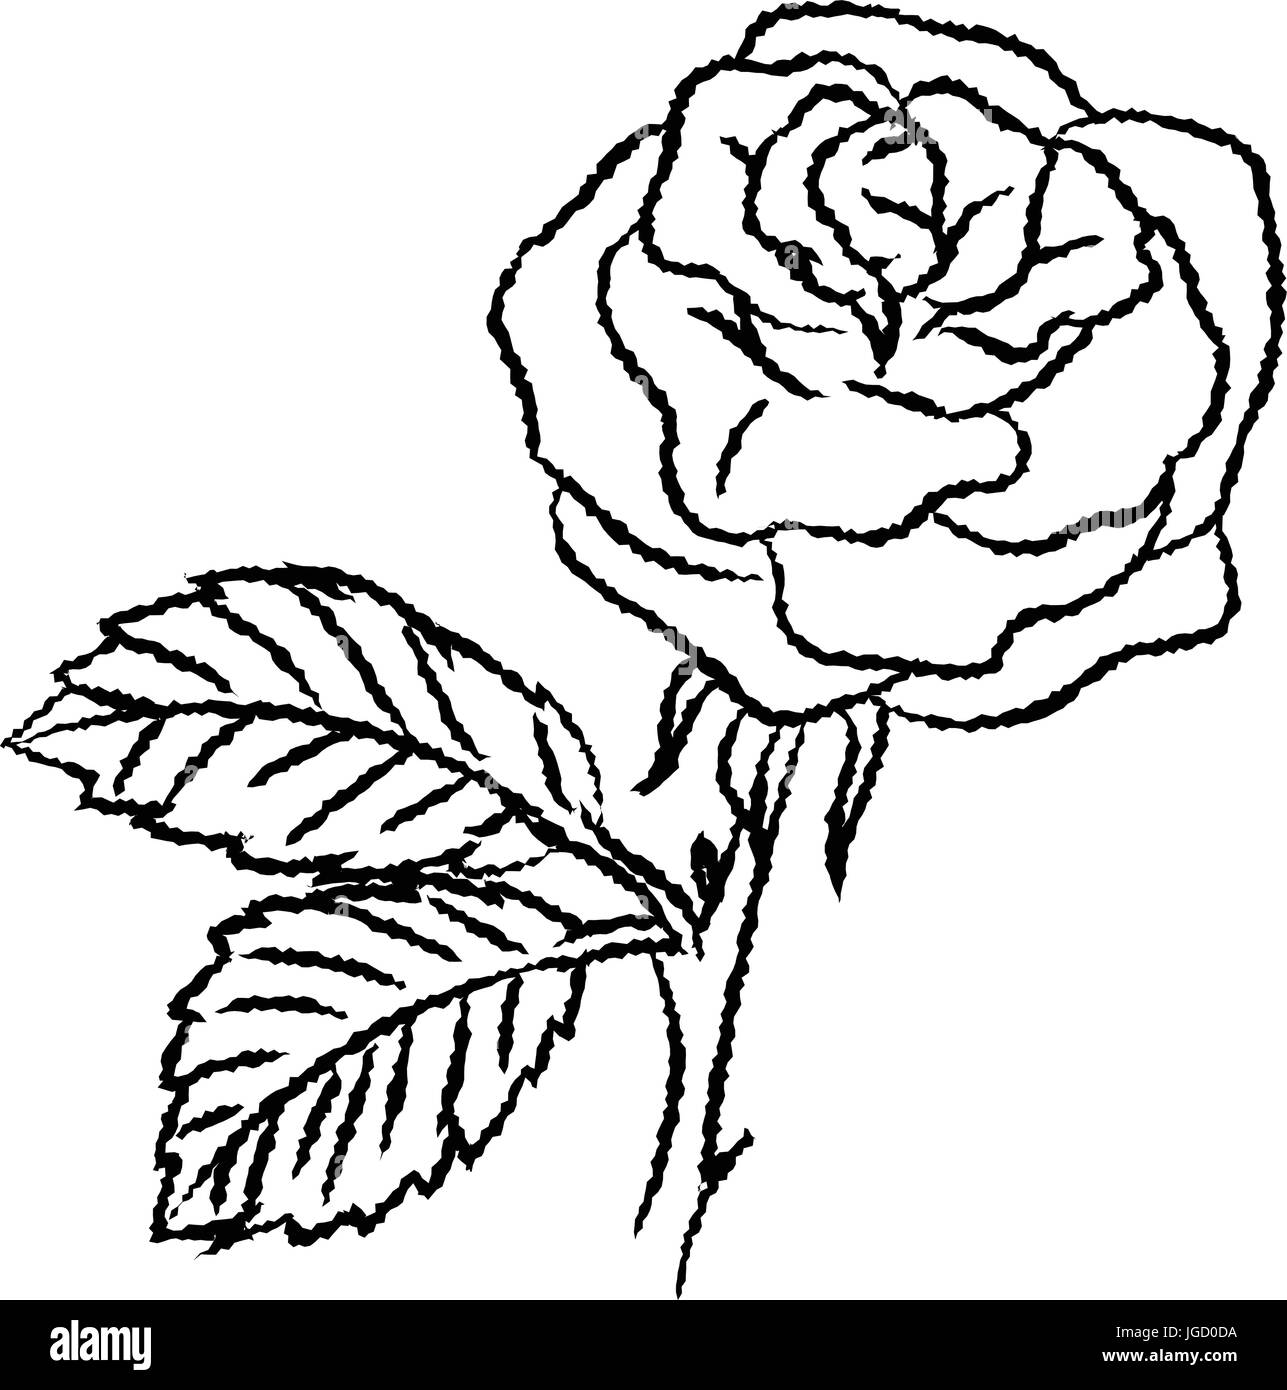 Croquis Dibujados A Mano De Rose Aislados En Blanco Y Negro Para